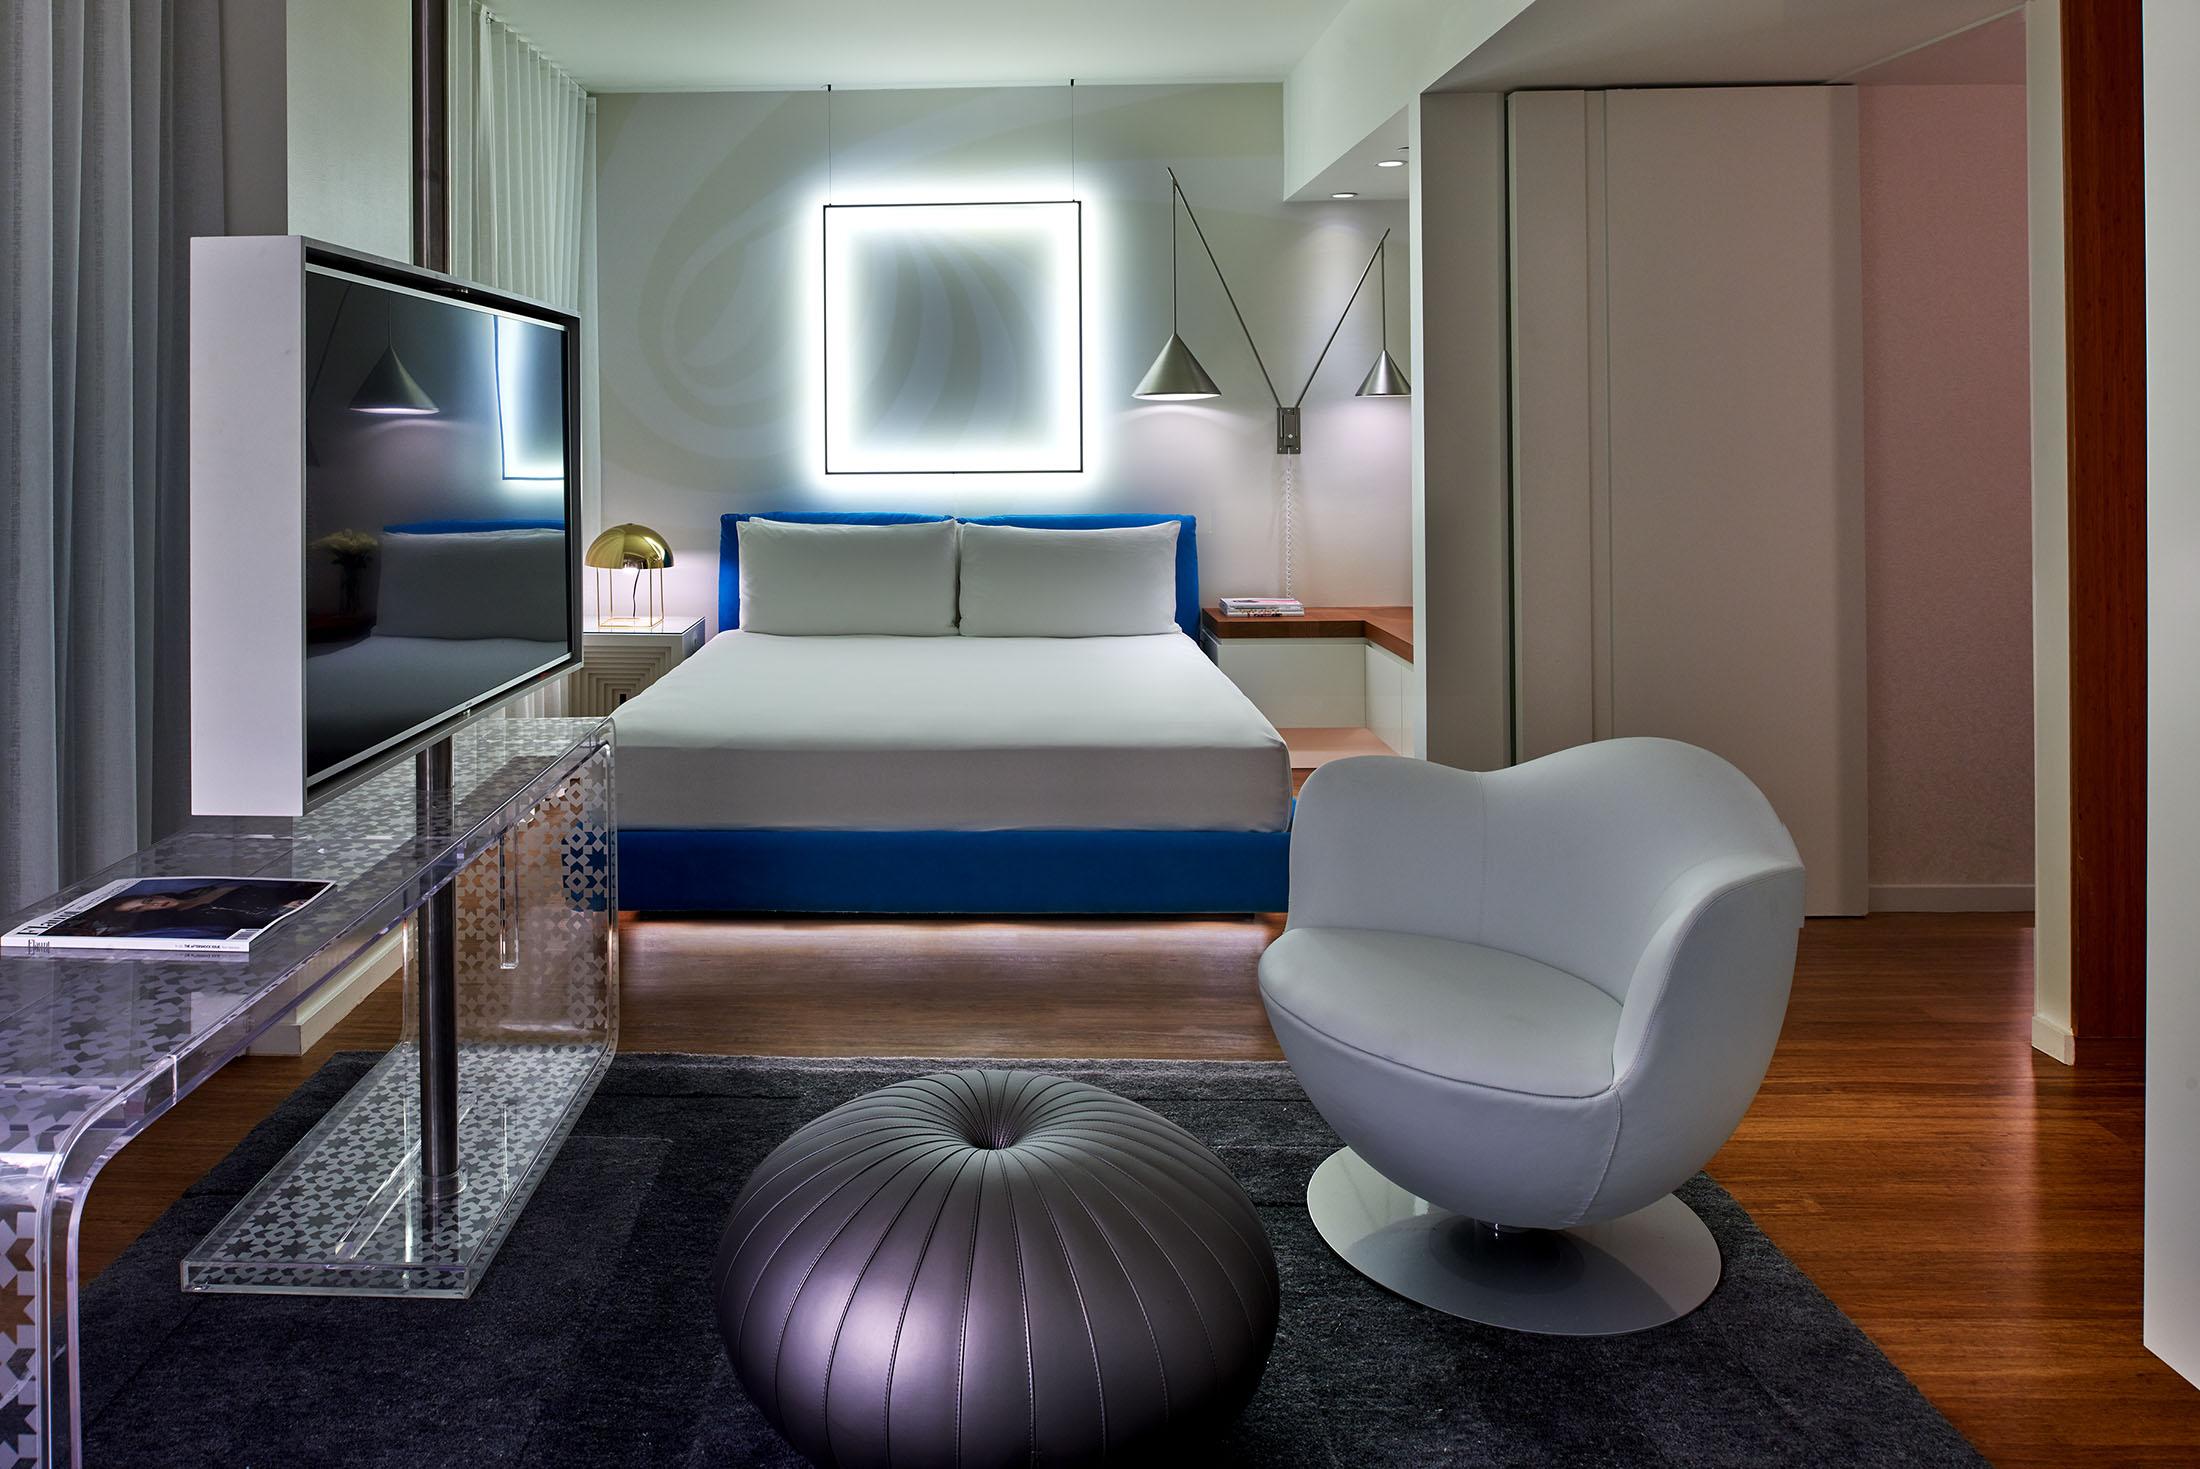 Chambre d'hôtel avec une lumière carrée derrière le lit et une chaise au premier plan.